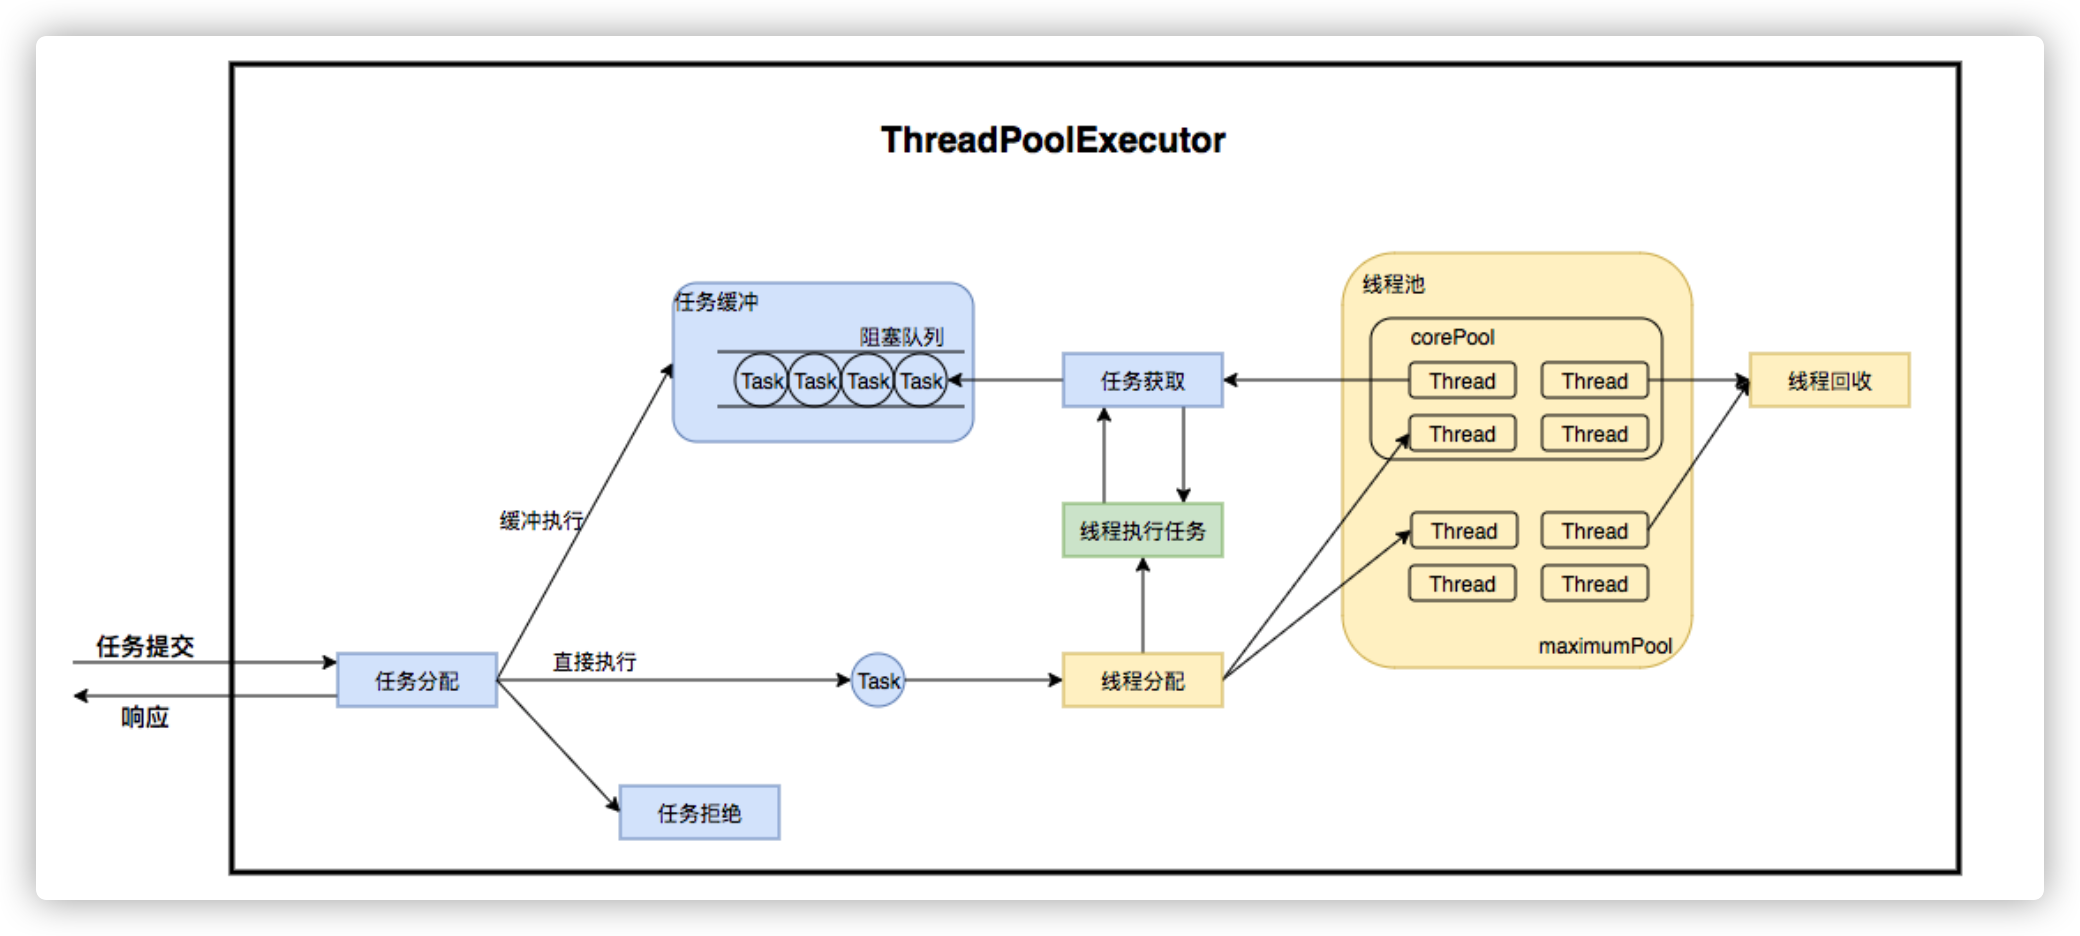 图2 ThreadPoolExecutor运行流程